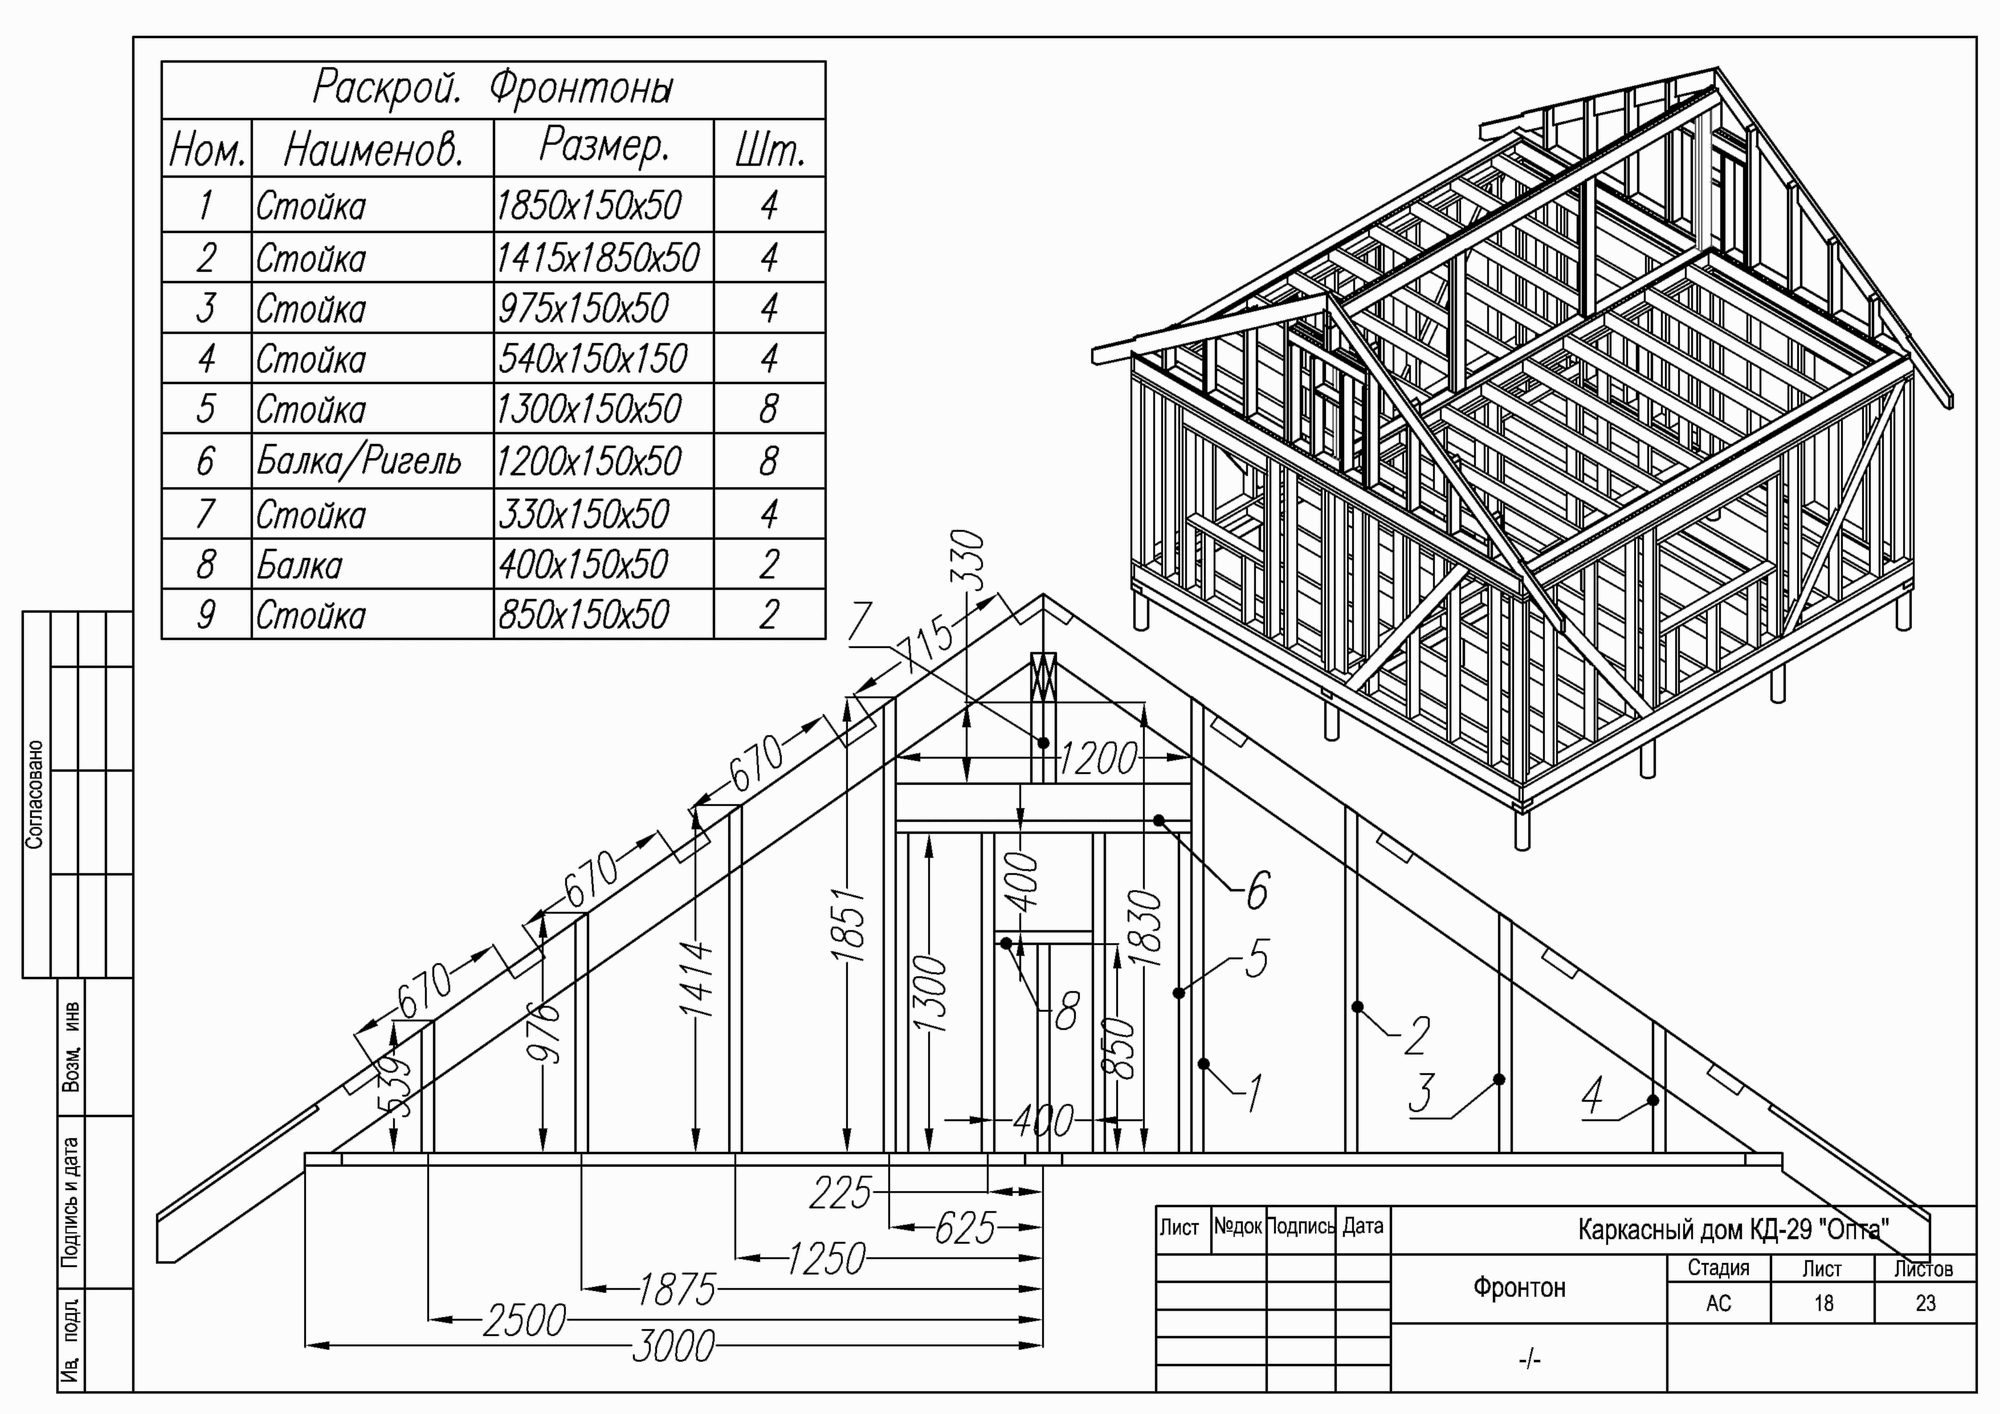 Каркасный дом своими руками: схемы и чертежи, расчет материалов, крыша, вентиляция и утепление